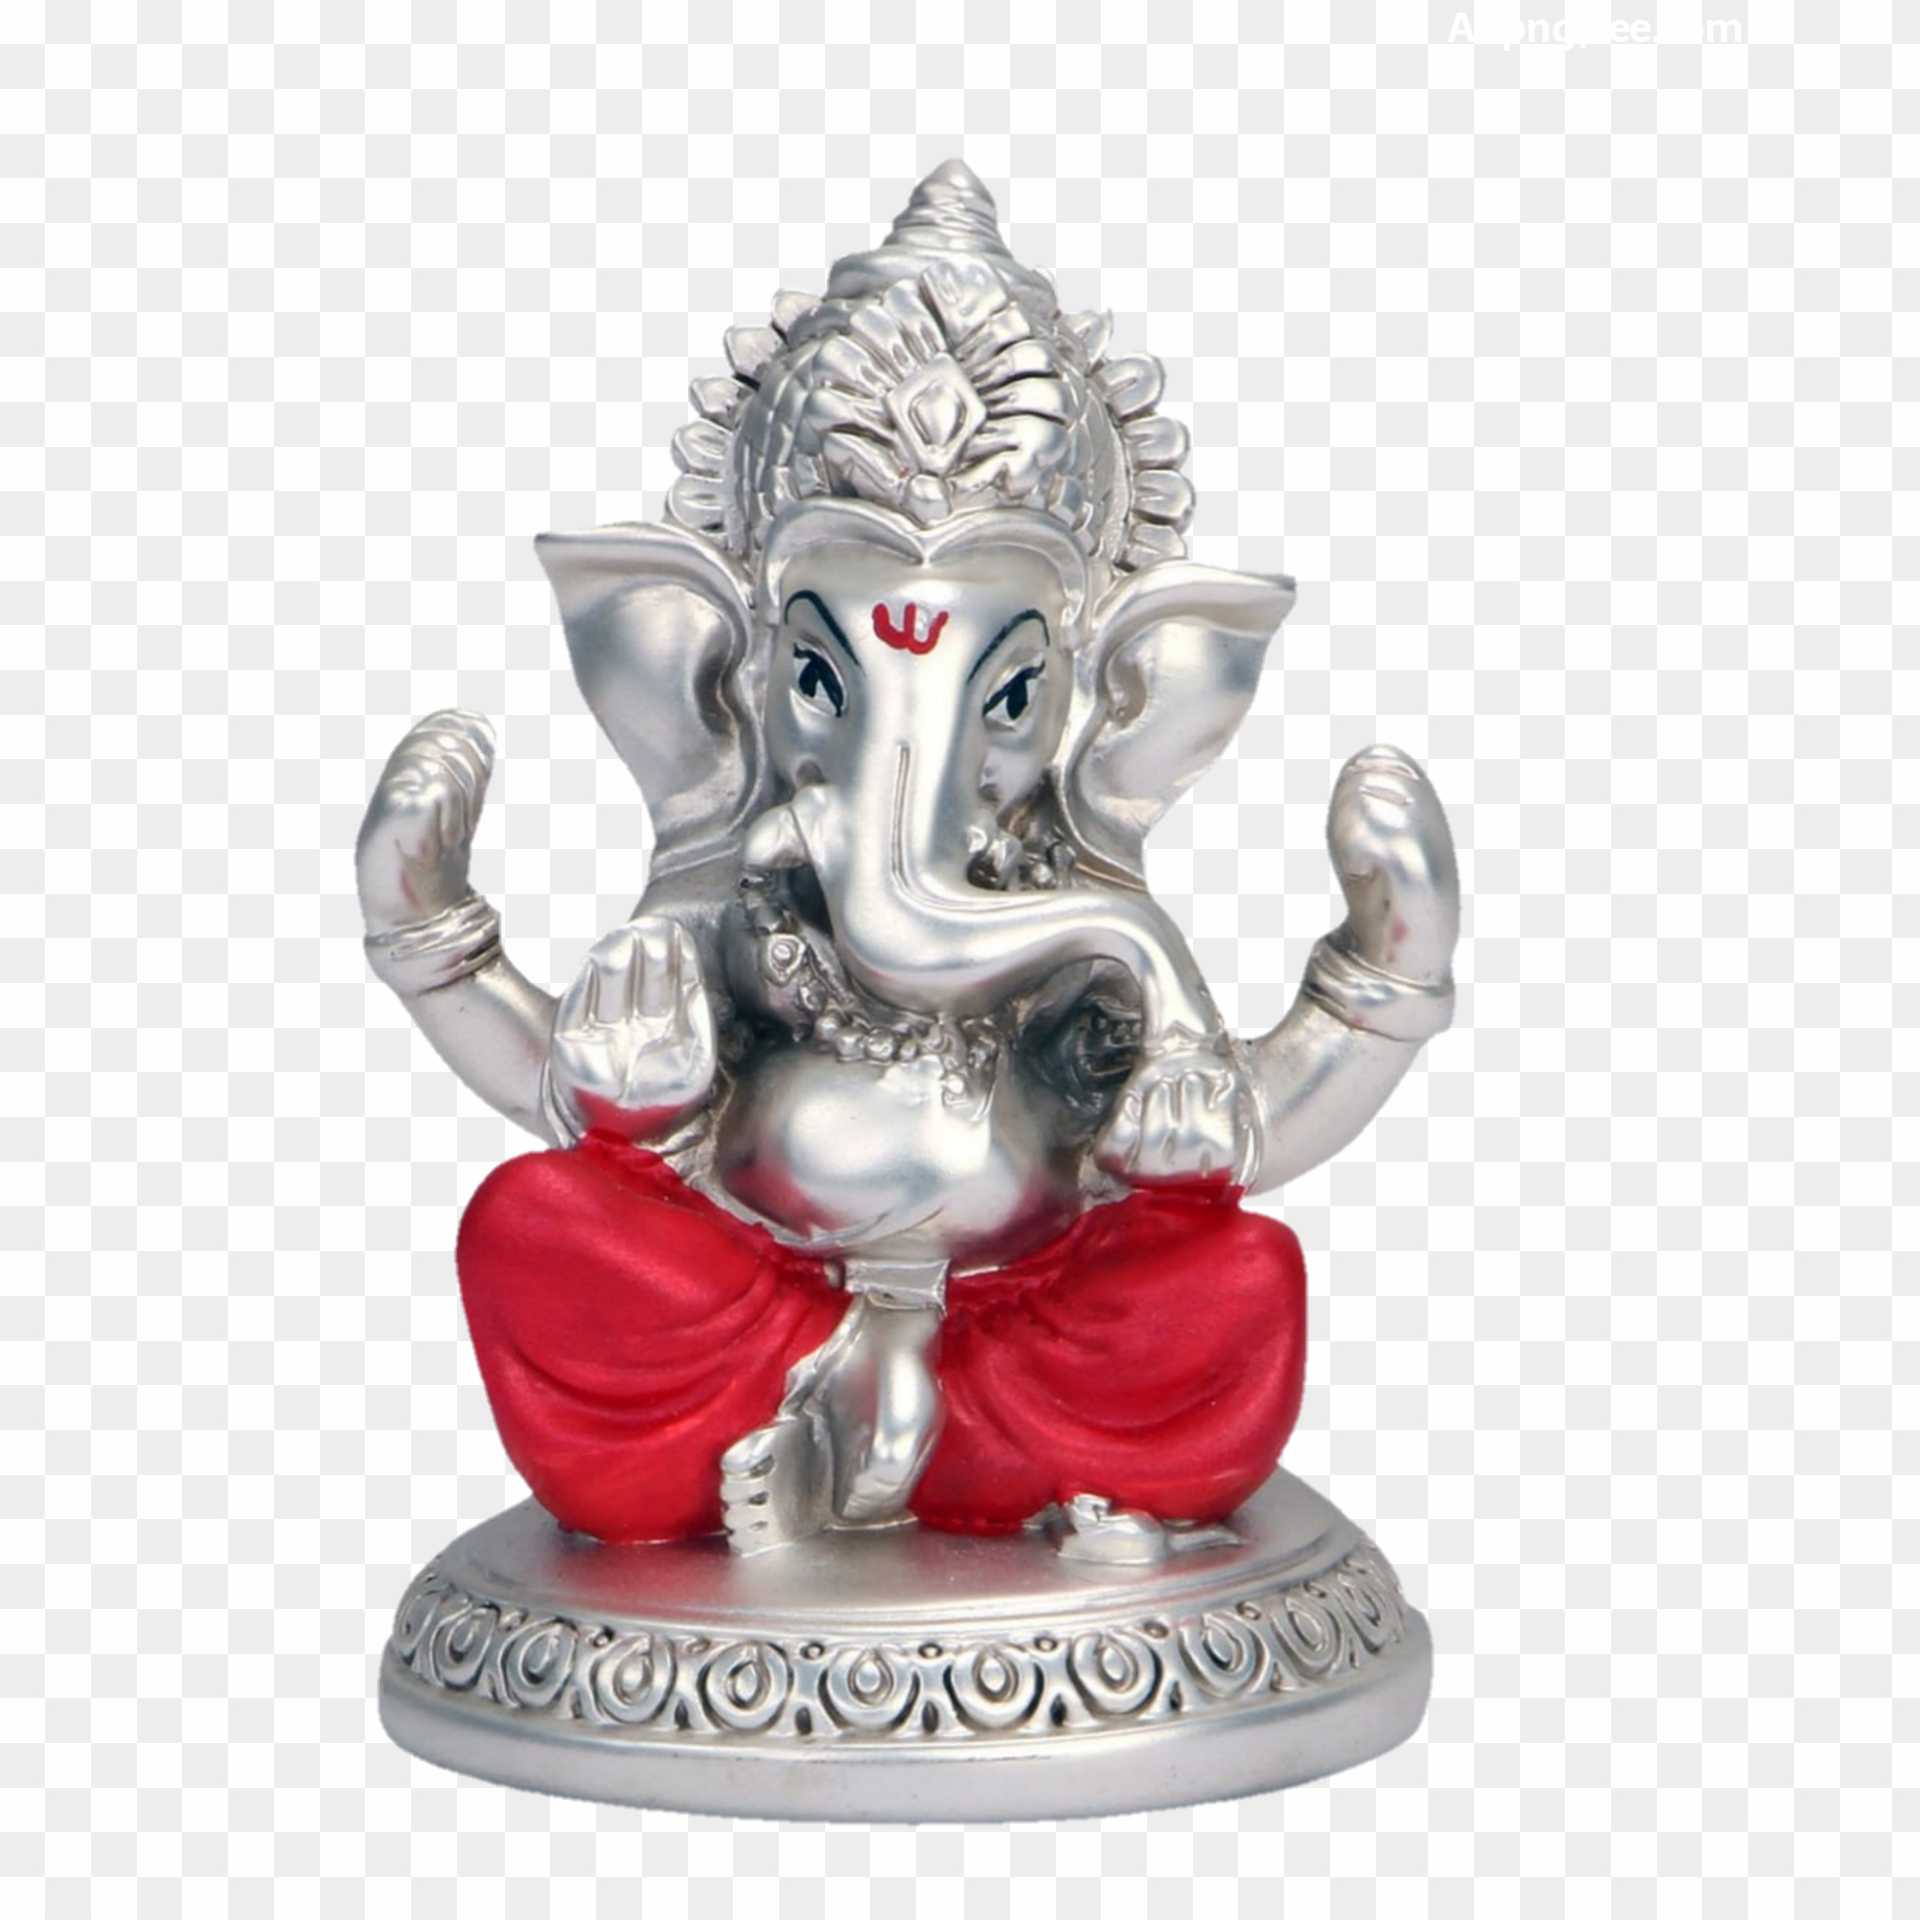 Shree Ganesha Vector Hd PNG Images, Shree Ganeshay Namah Hindi Calligraphy  Logo With Lord Ganesha Symbol, Shree, Ganehsay, Namah PNG Image For Free  Download | Calligraphy logo, Holi festival of colours, Hindi